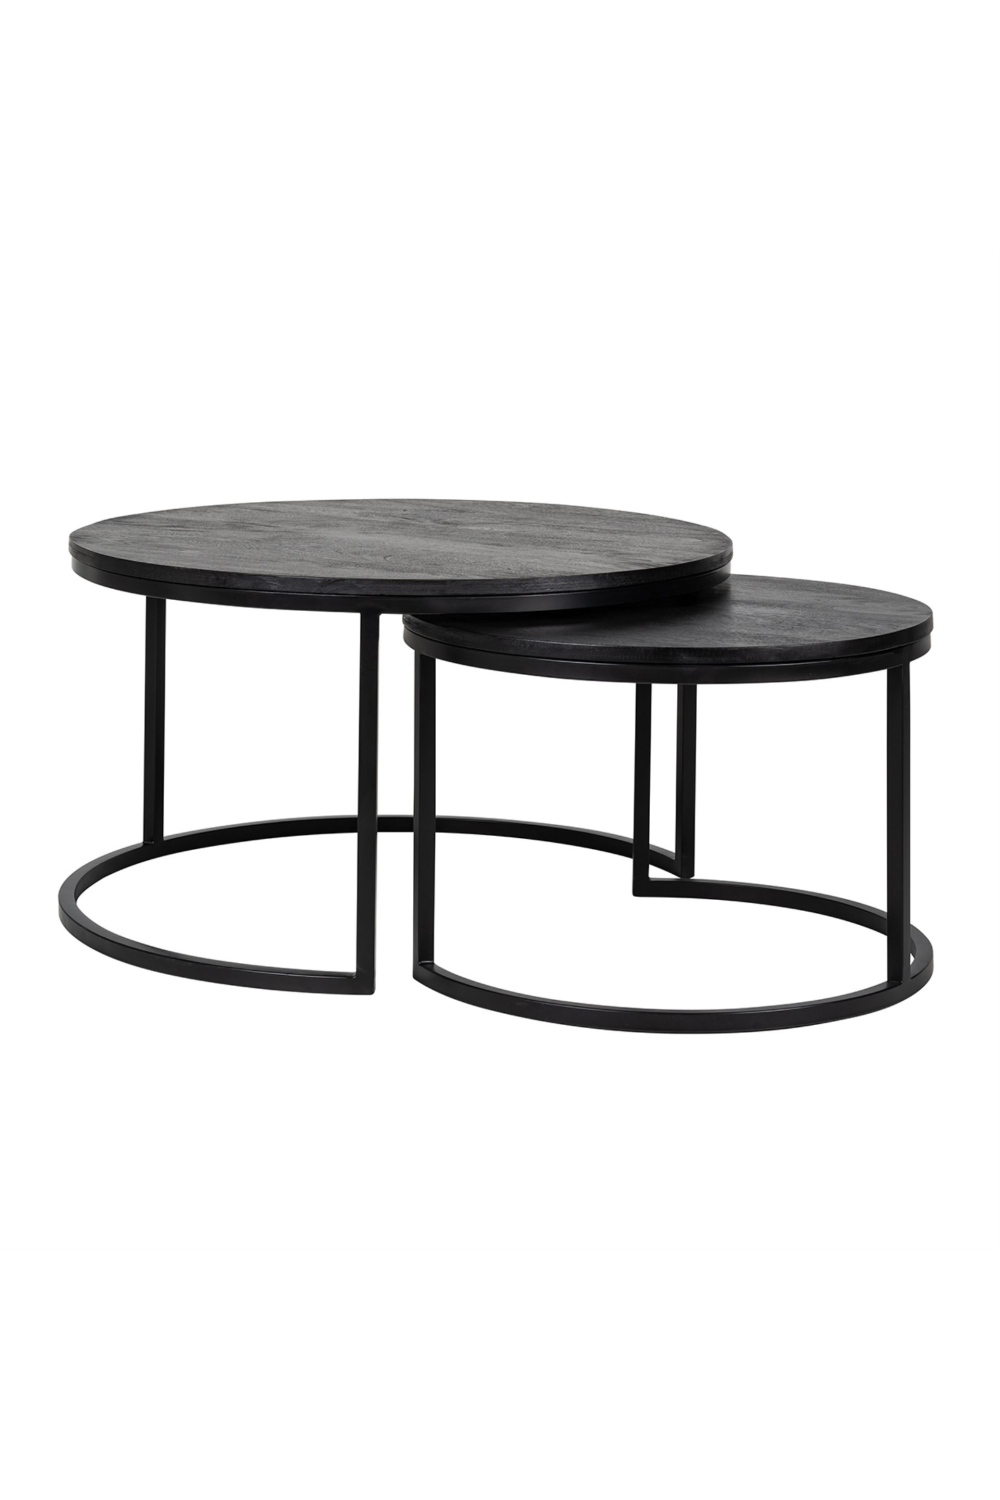 Round Black Nested Coffee Tables (2) OROA Catana OROA - OROA